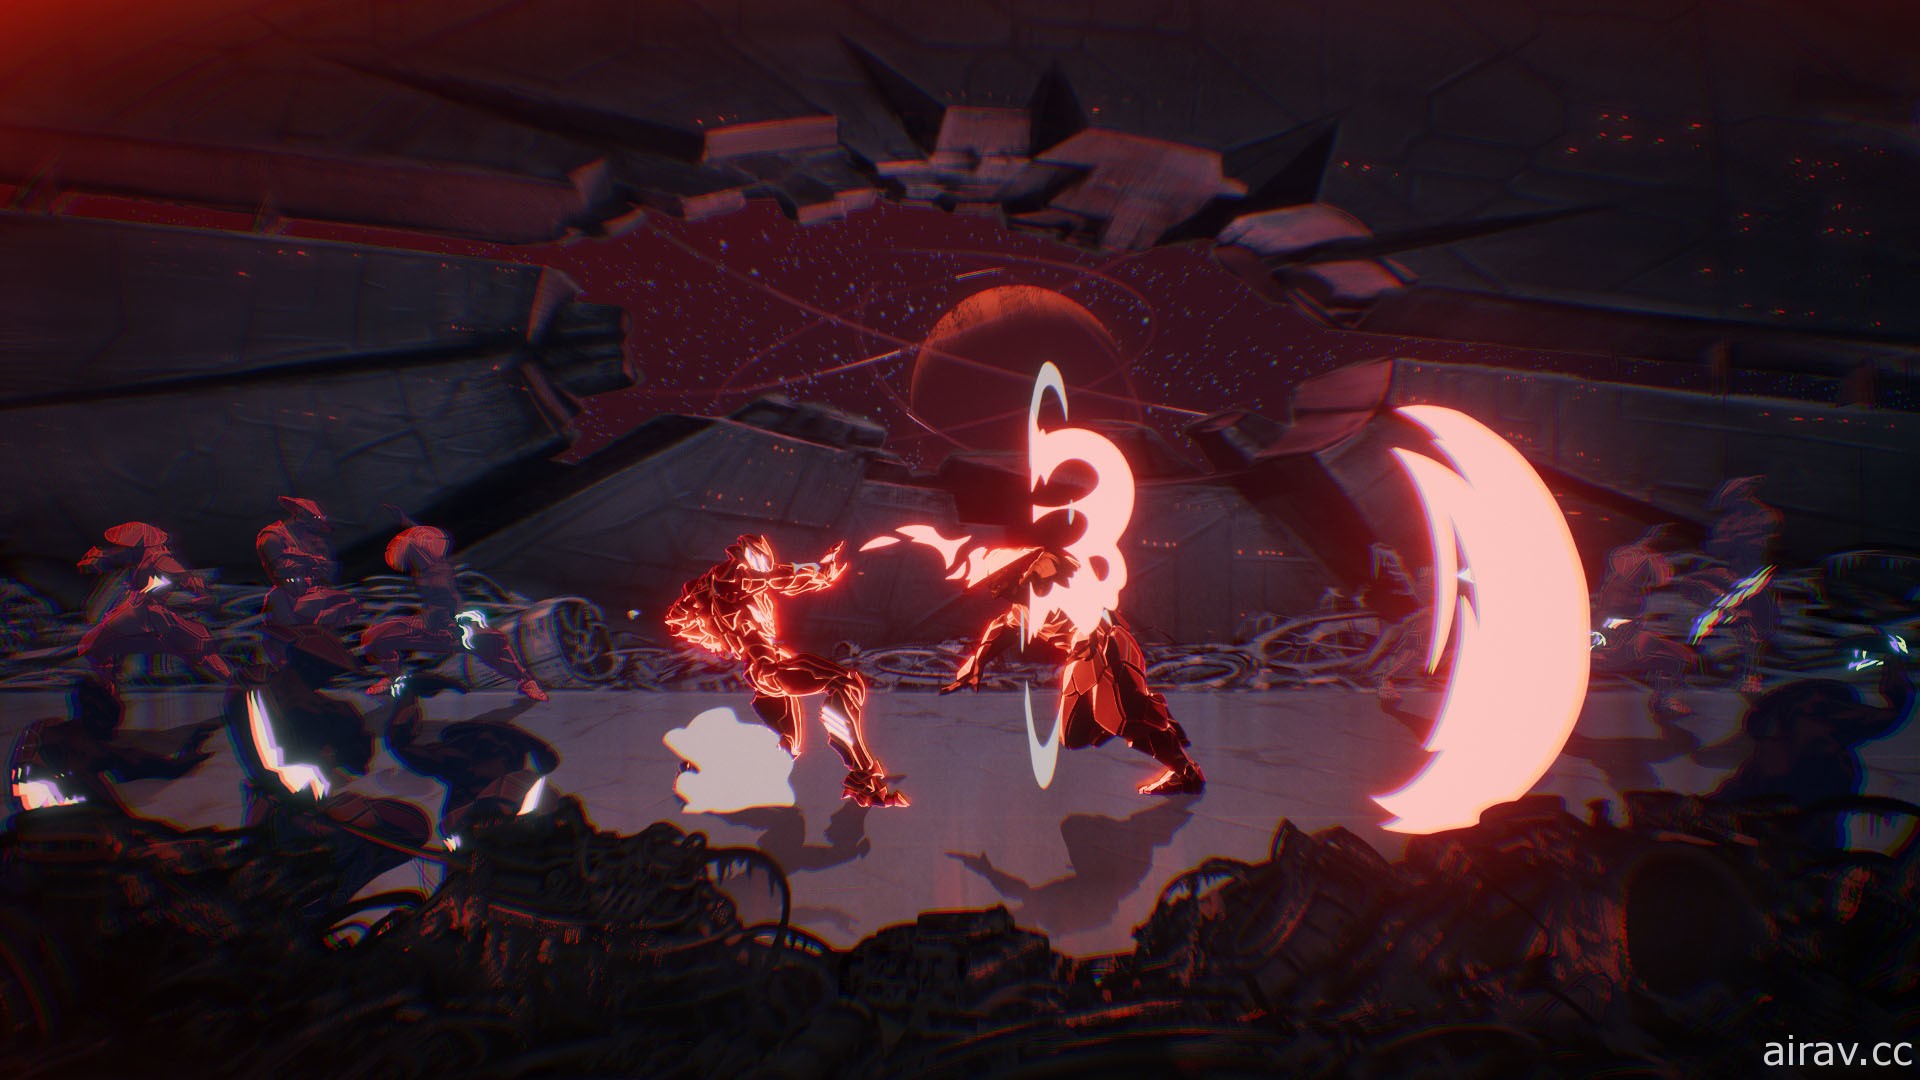 動畫風科幻動作遊戲《永世大帝必須死》正式發表 與寄生鎧甲共同面對各方勢力挑戰